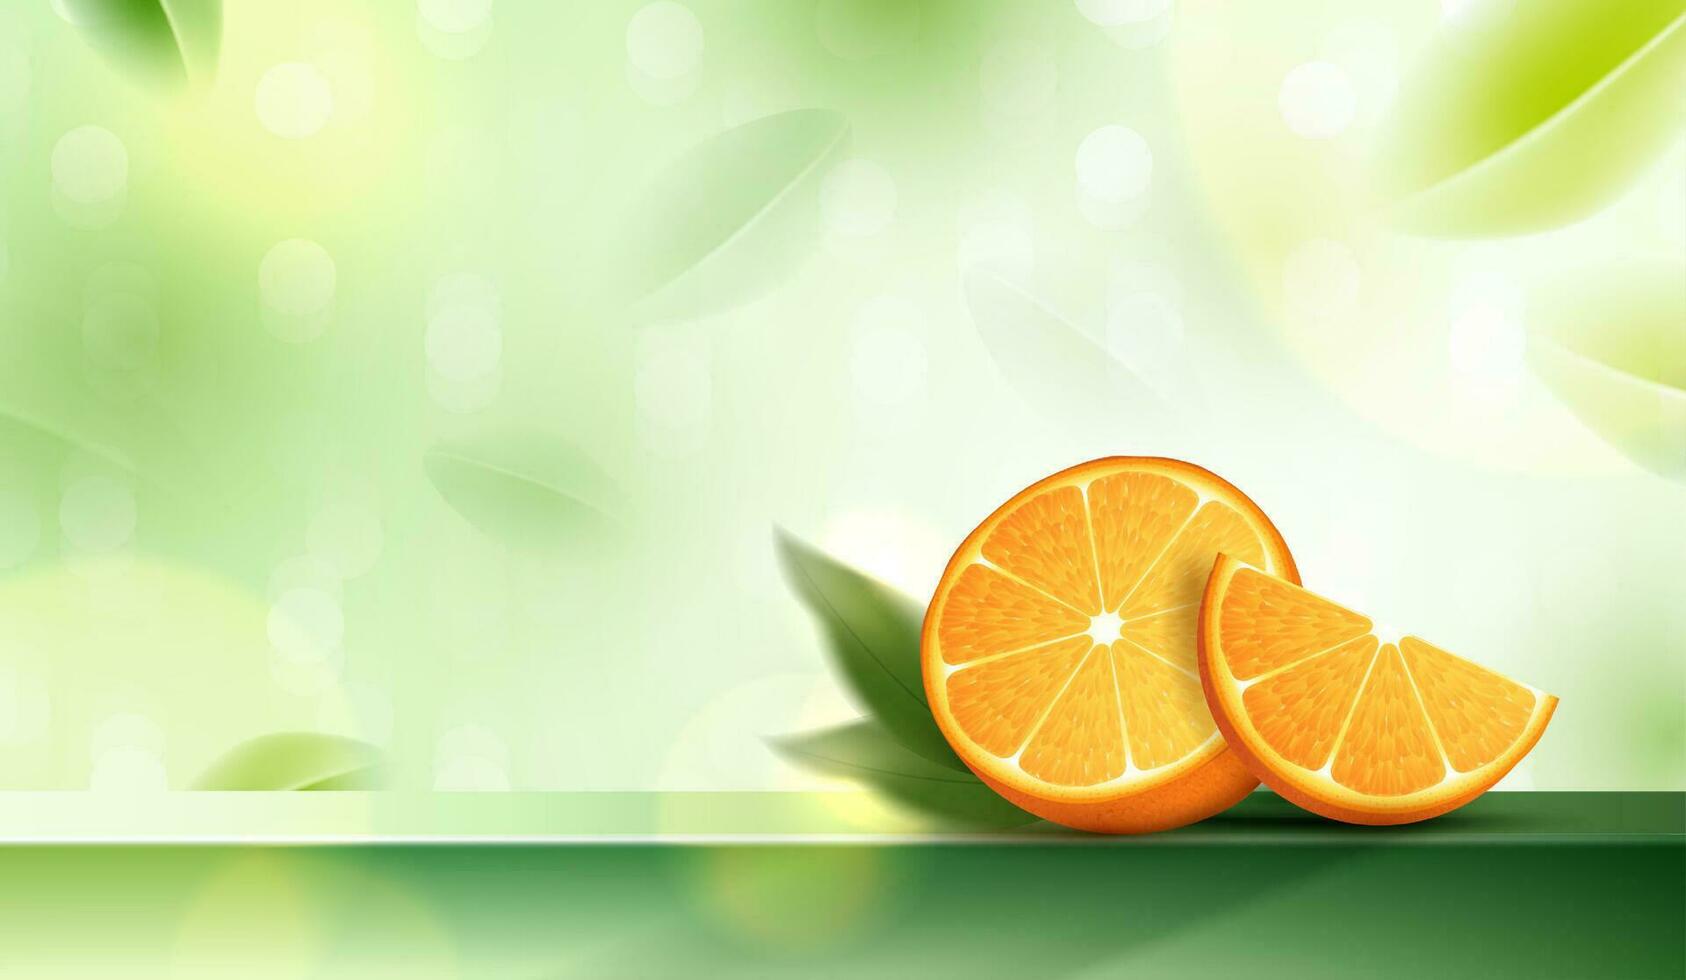 saftig Orangen mit Grün Blätter auf Prämie Podium Anzeige zum Produkt. anwendbar zum Obst Saft Werbung. Kosmetika Vitamin c oder Haut Pflege. Vektor Design.